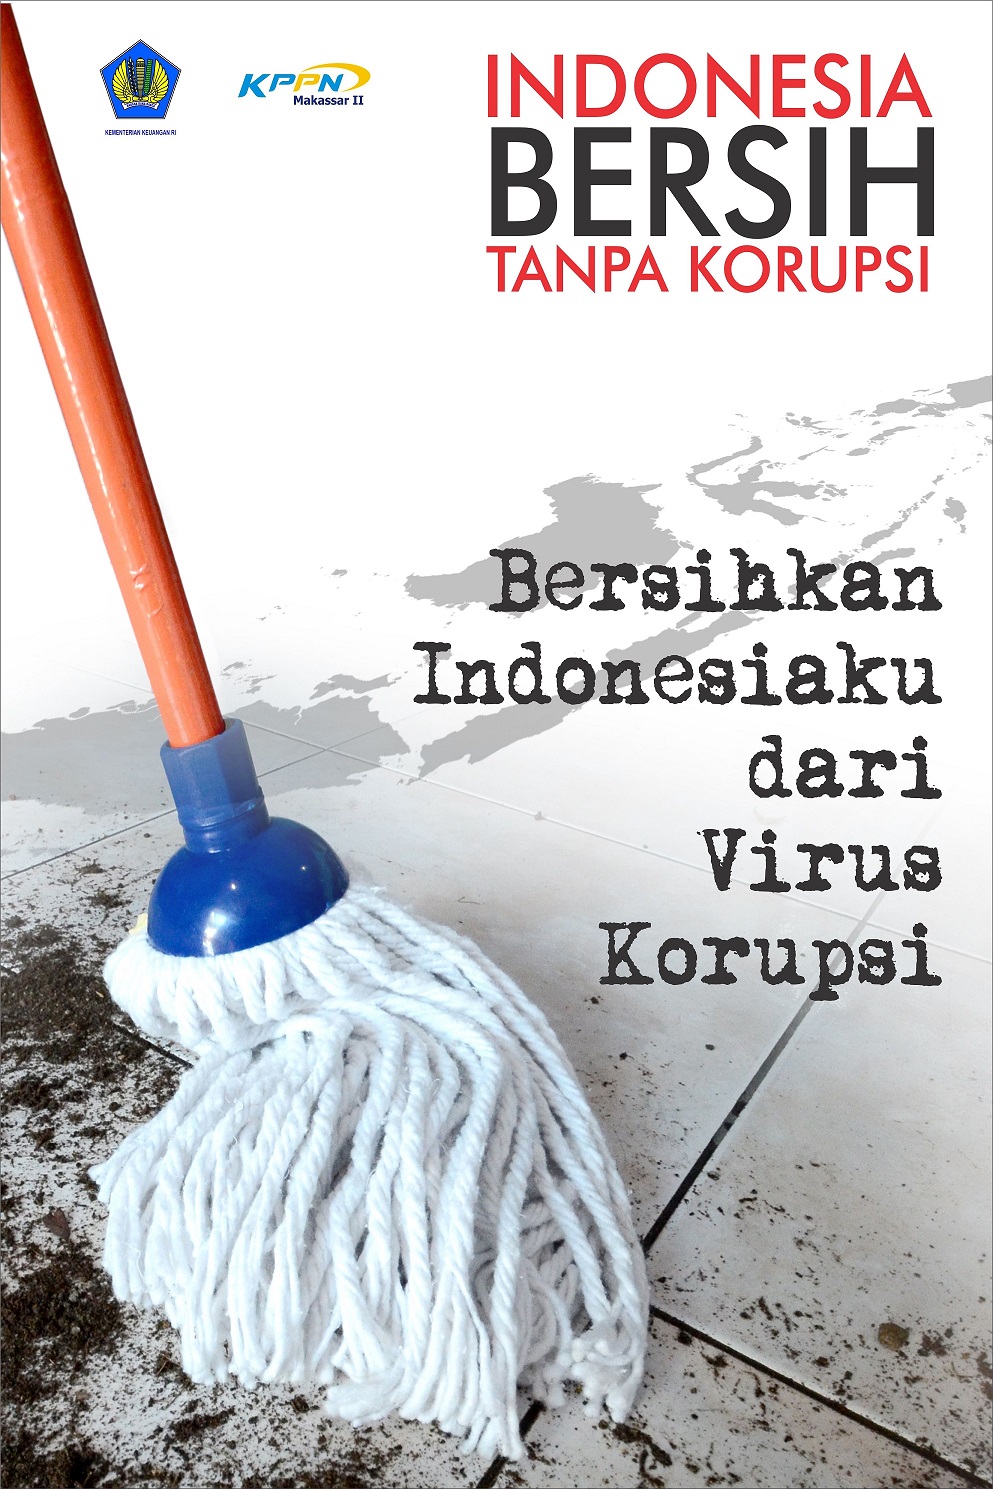 Poster Pemenang Lomba Hakordia 2017 KPPN Makassar II